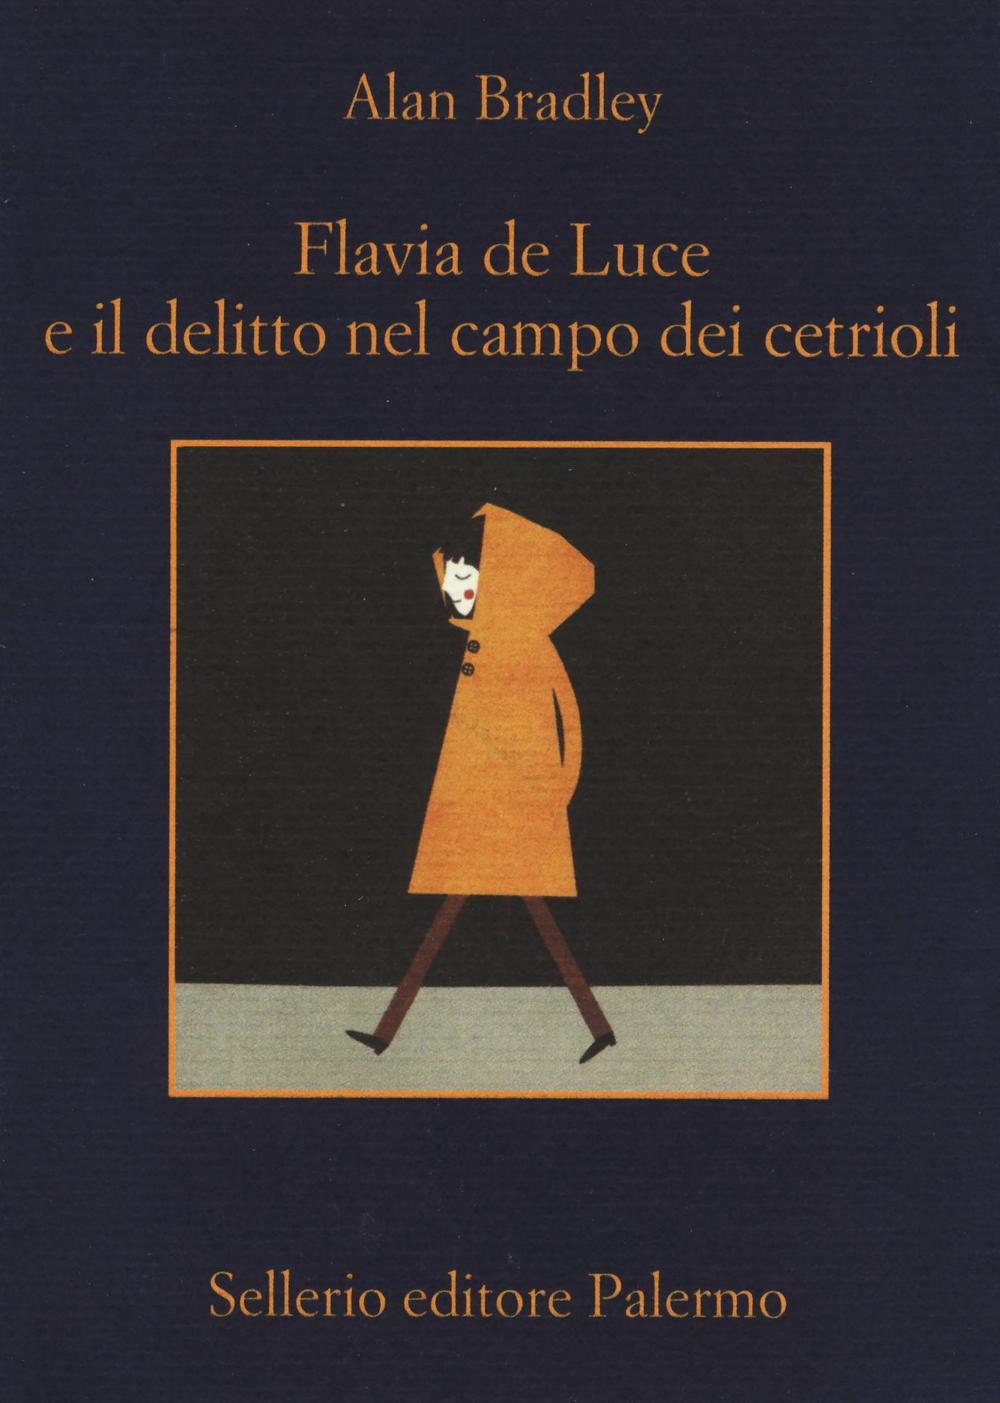 Book Flavia de Luce e il delitto nel campo dei cetrioli Alan Bradley